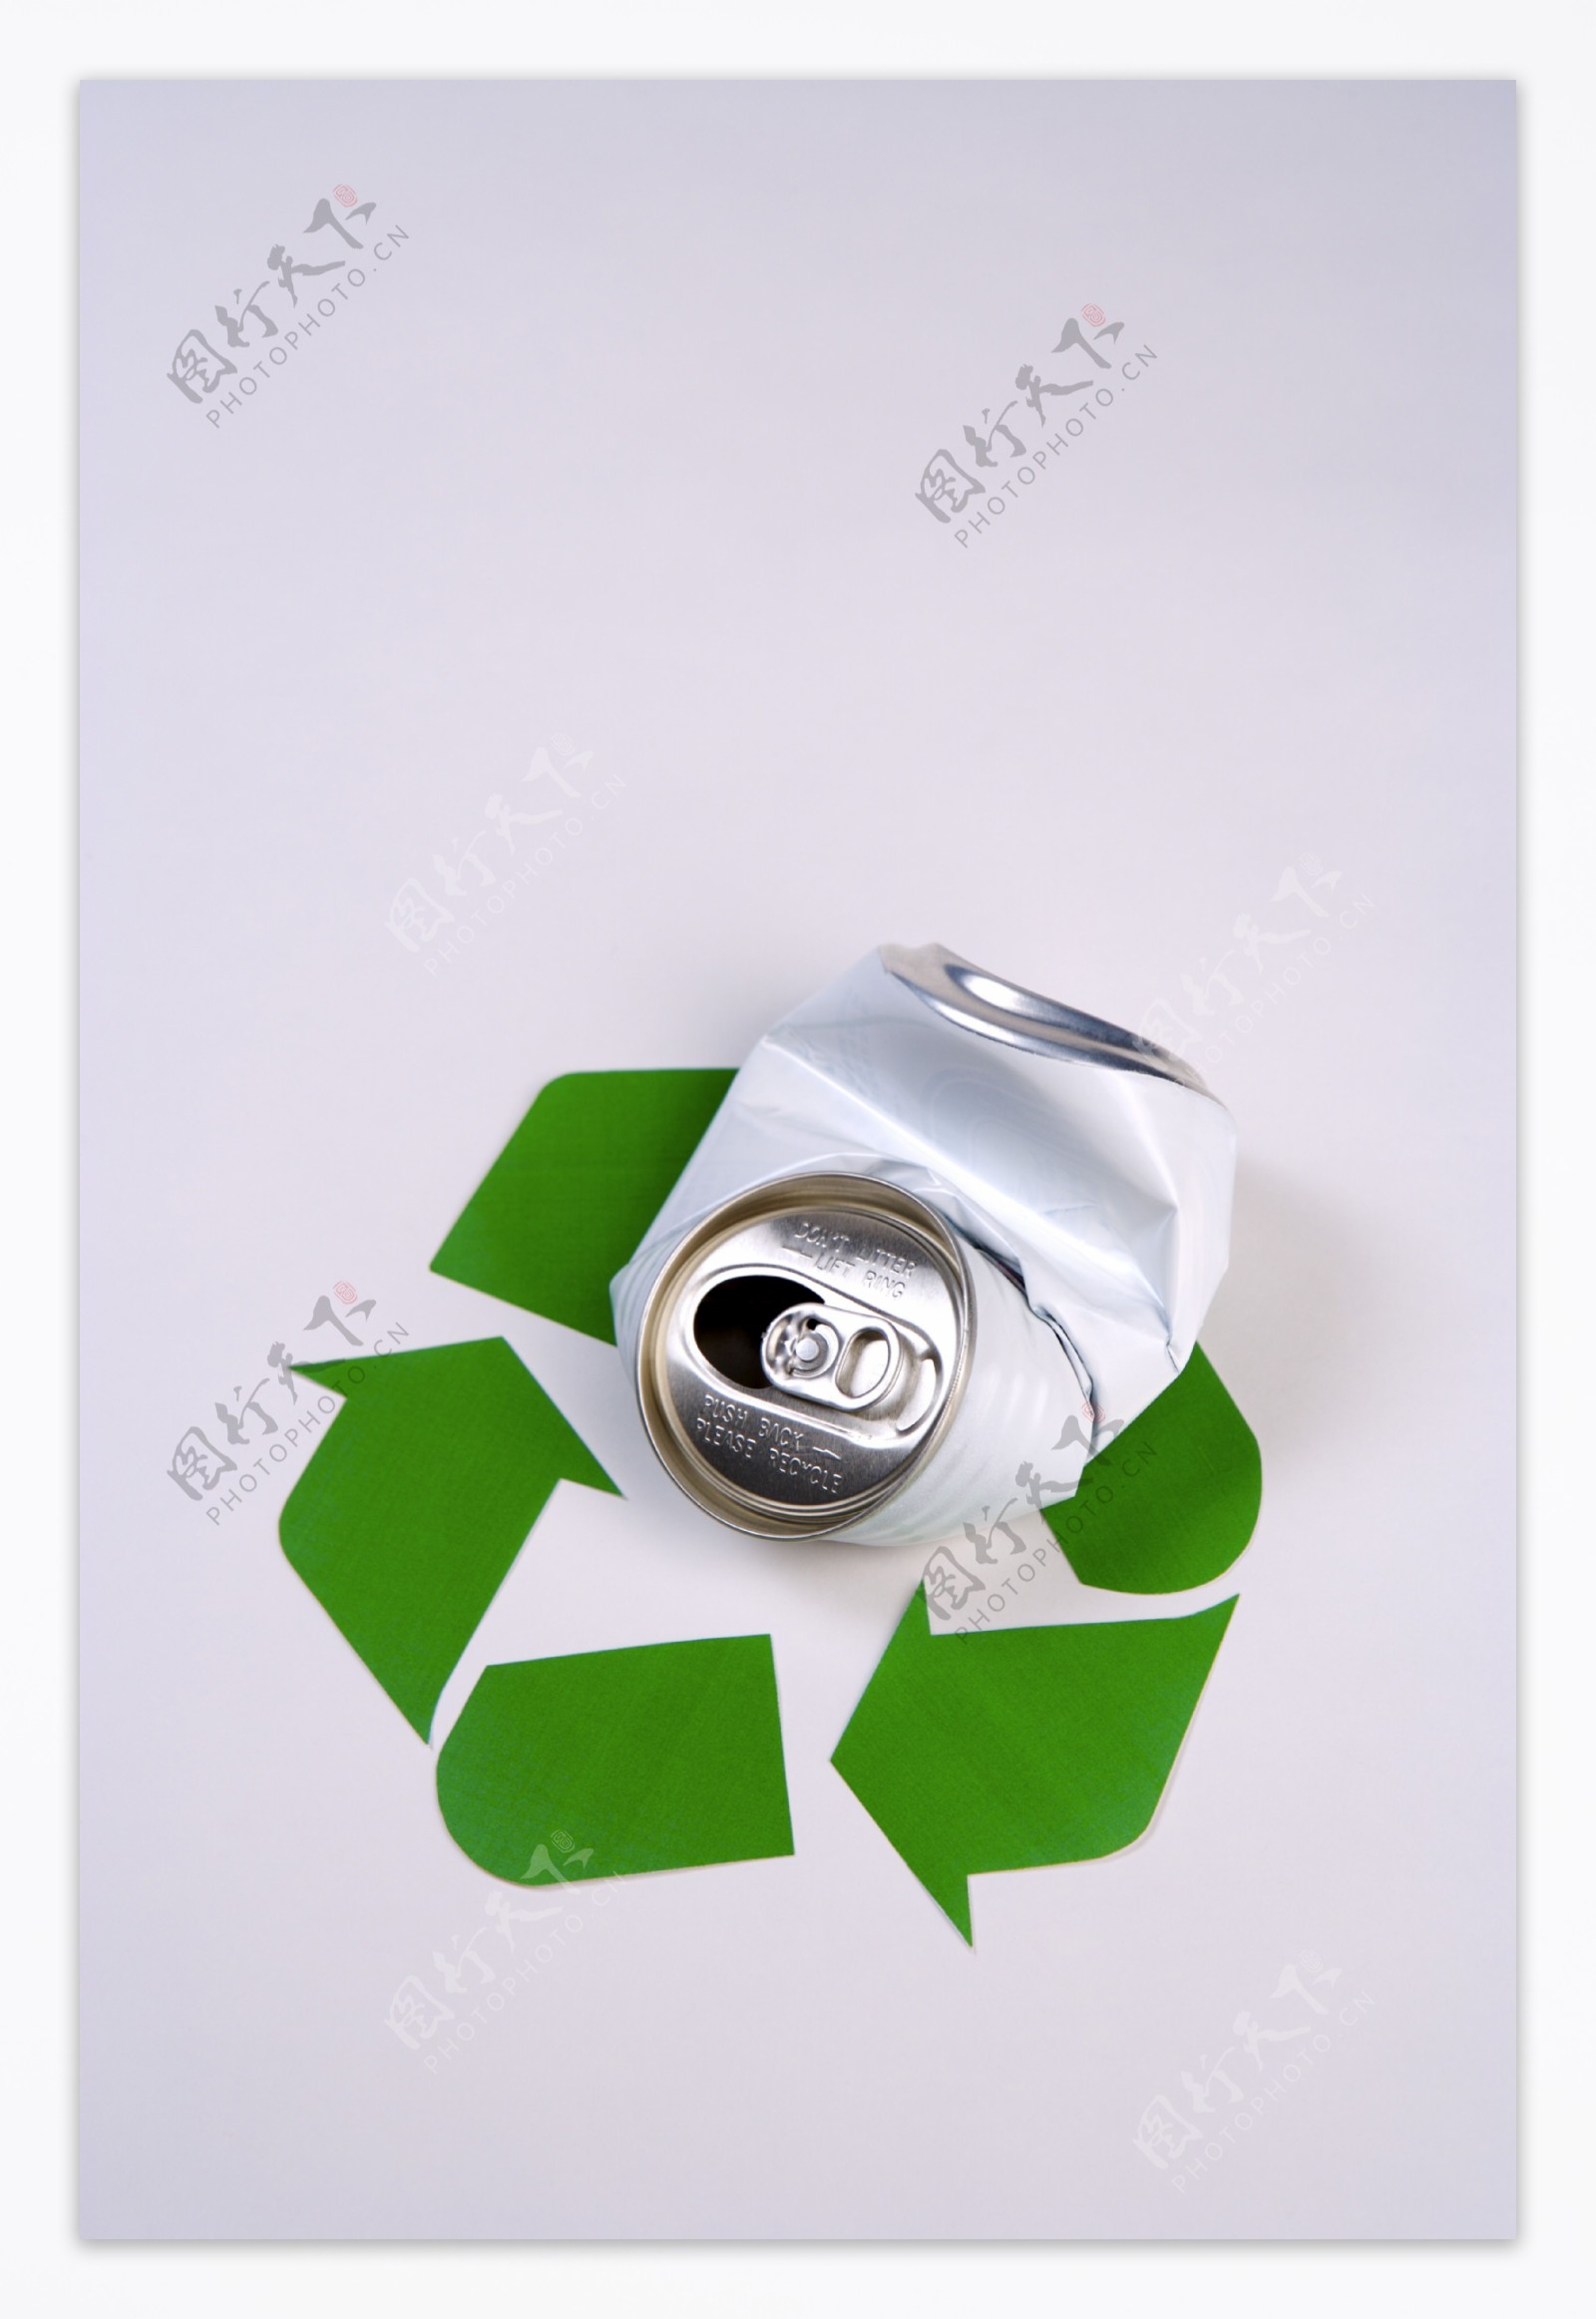 电池绿色电池图片